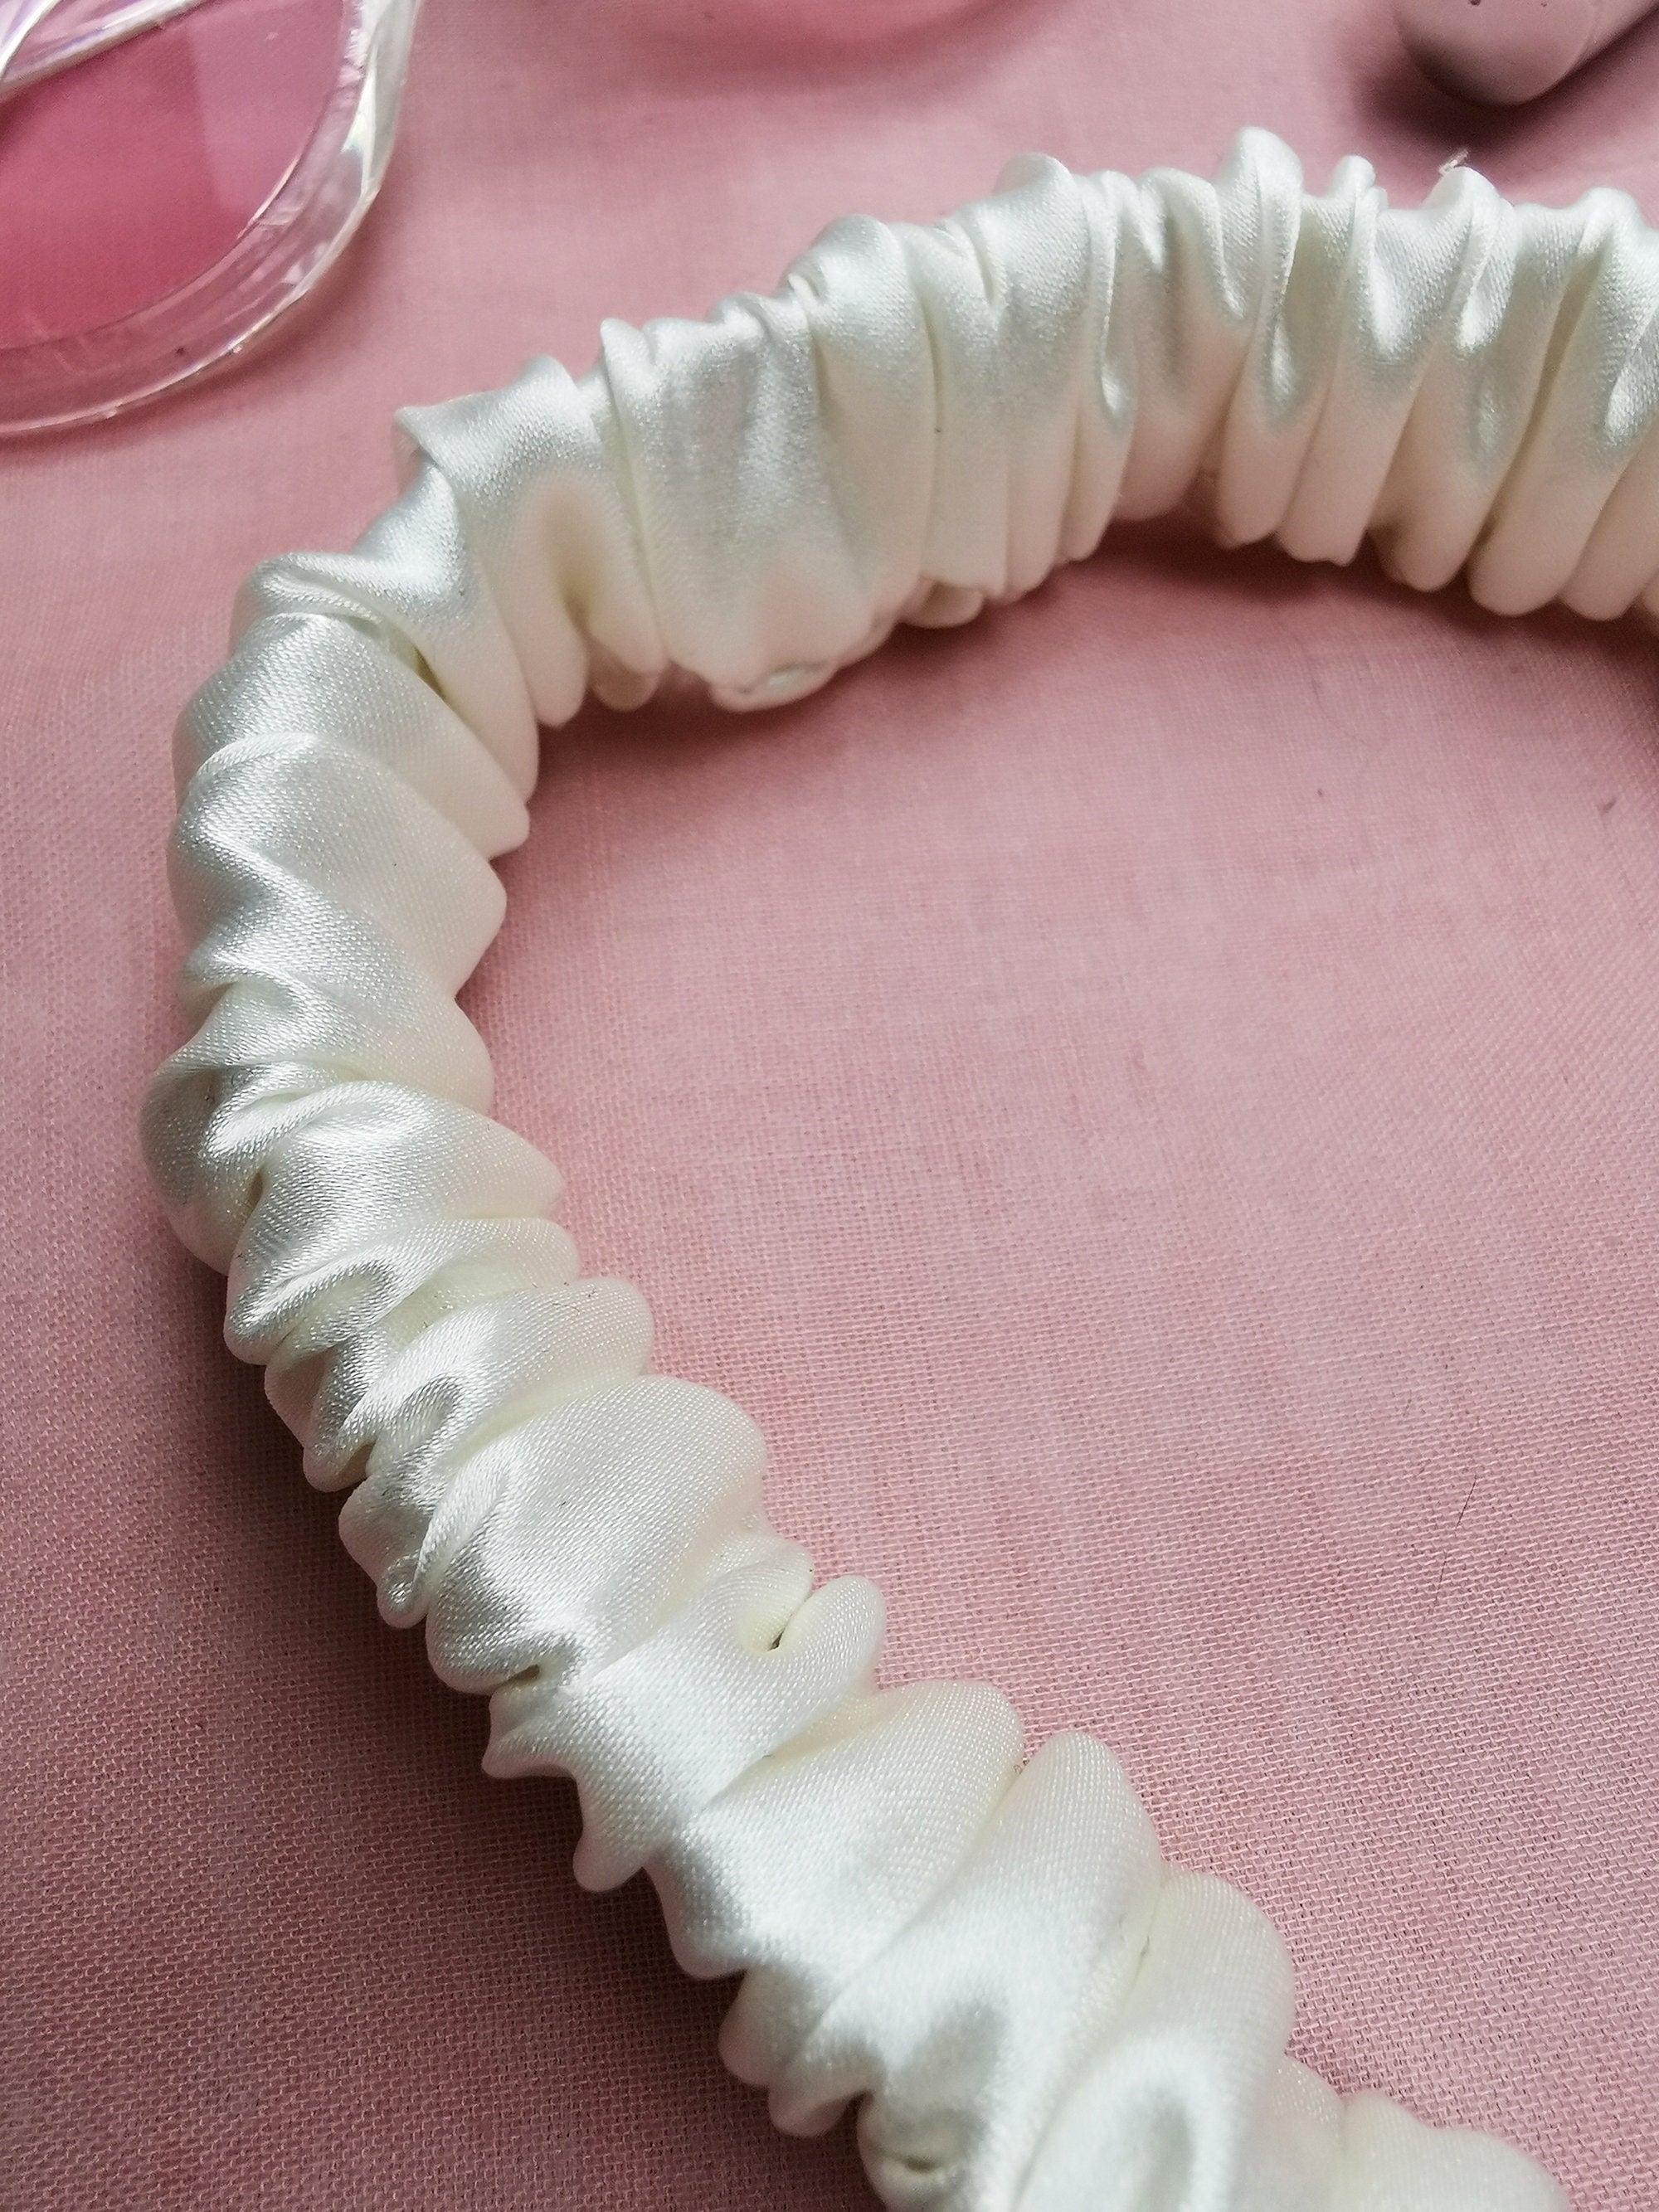 Handmade pearl white Bath & SPA hair secure headband, 100% silk